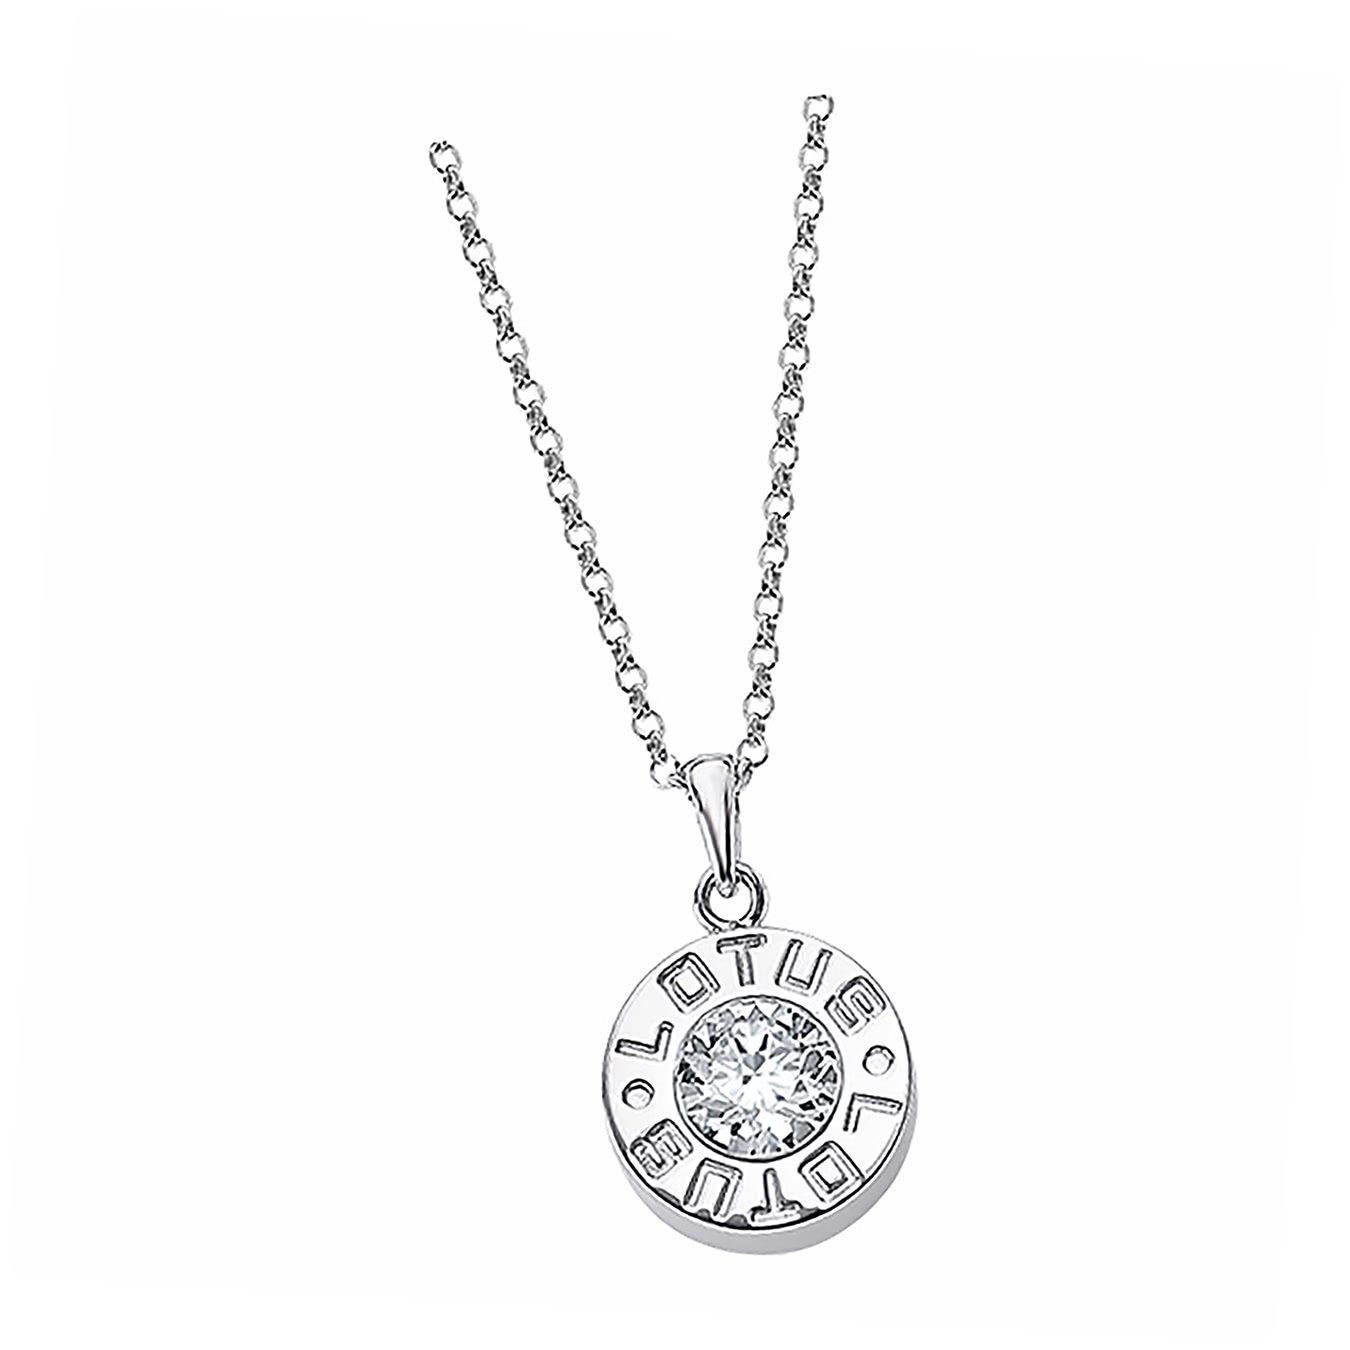 LOTUS SILVER Silberkette Lotus Silver Lotus Halskette (Halskette), Halsketten für Damen 925 Sterling Silber, silber, weiß